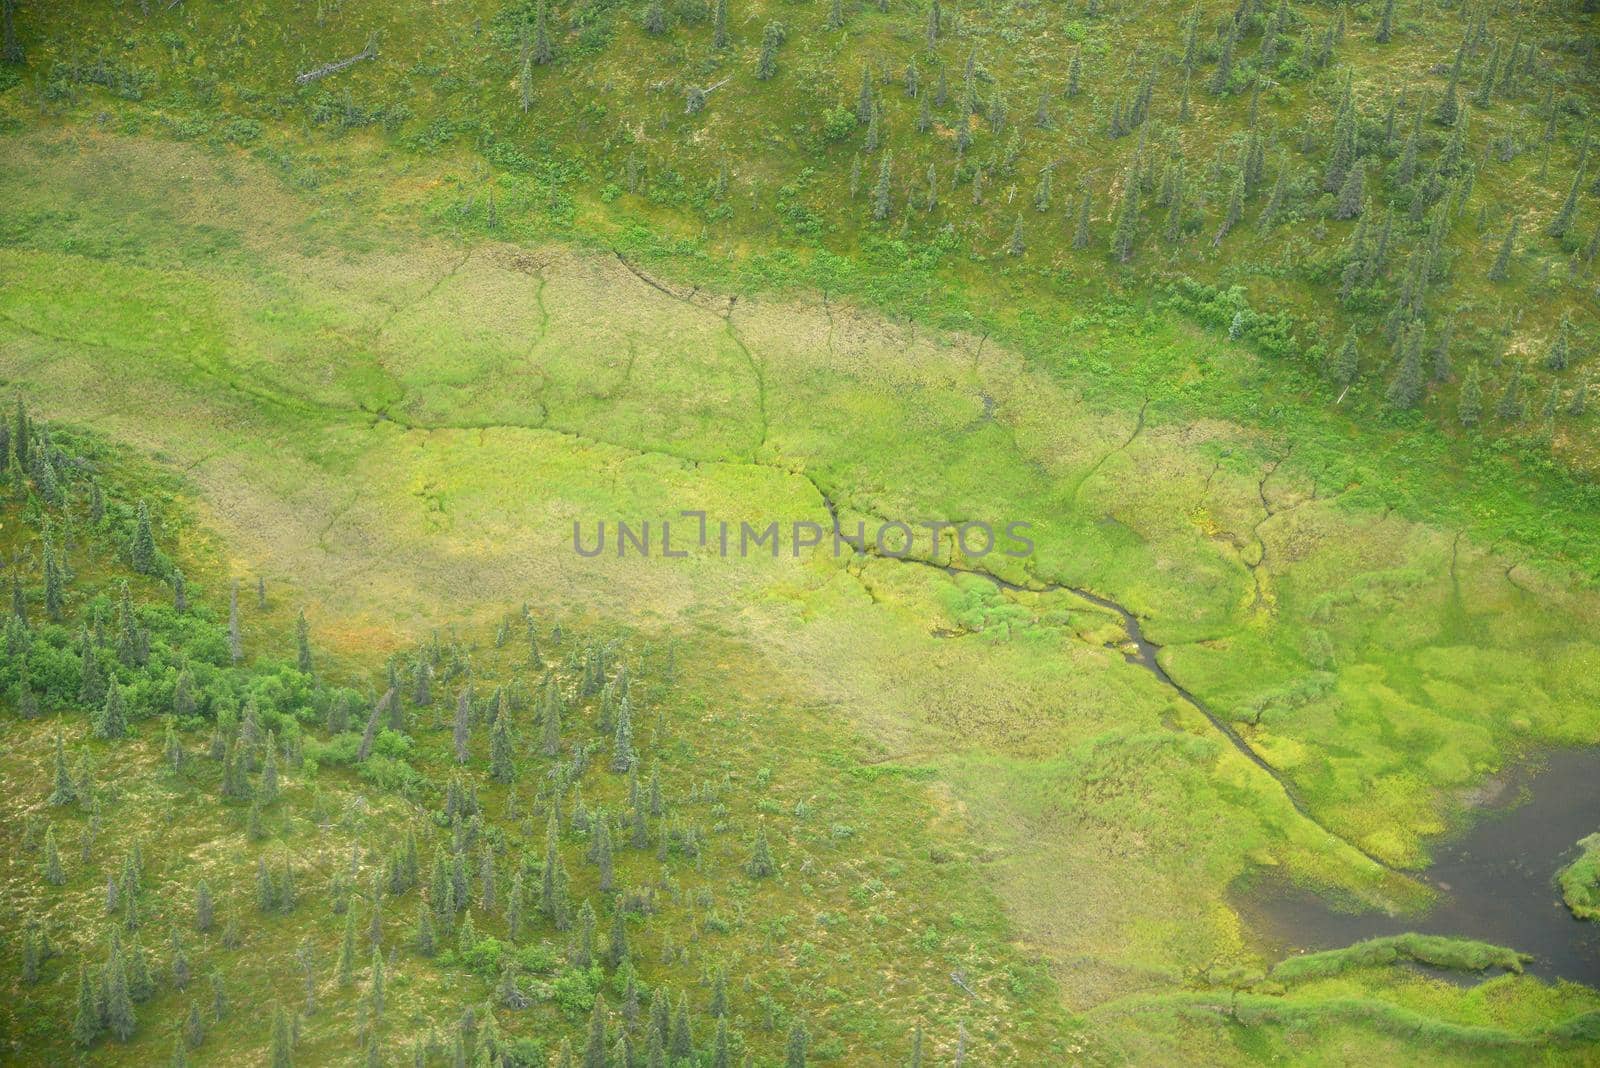 alaska aerial view by porbital